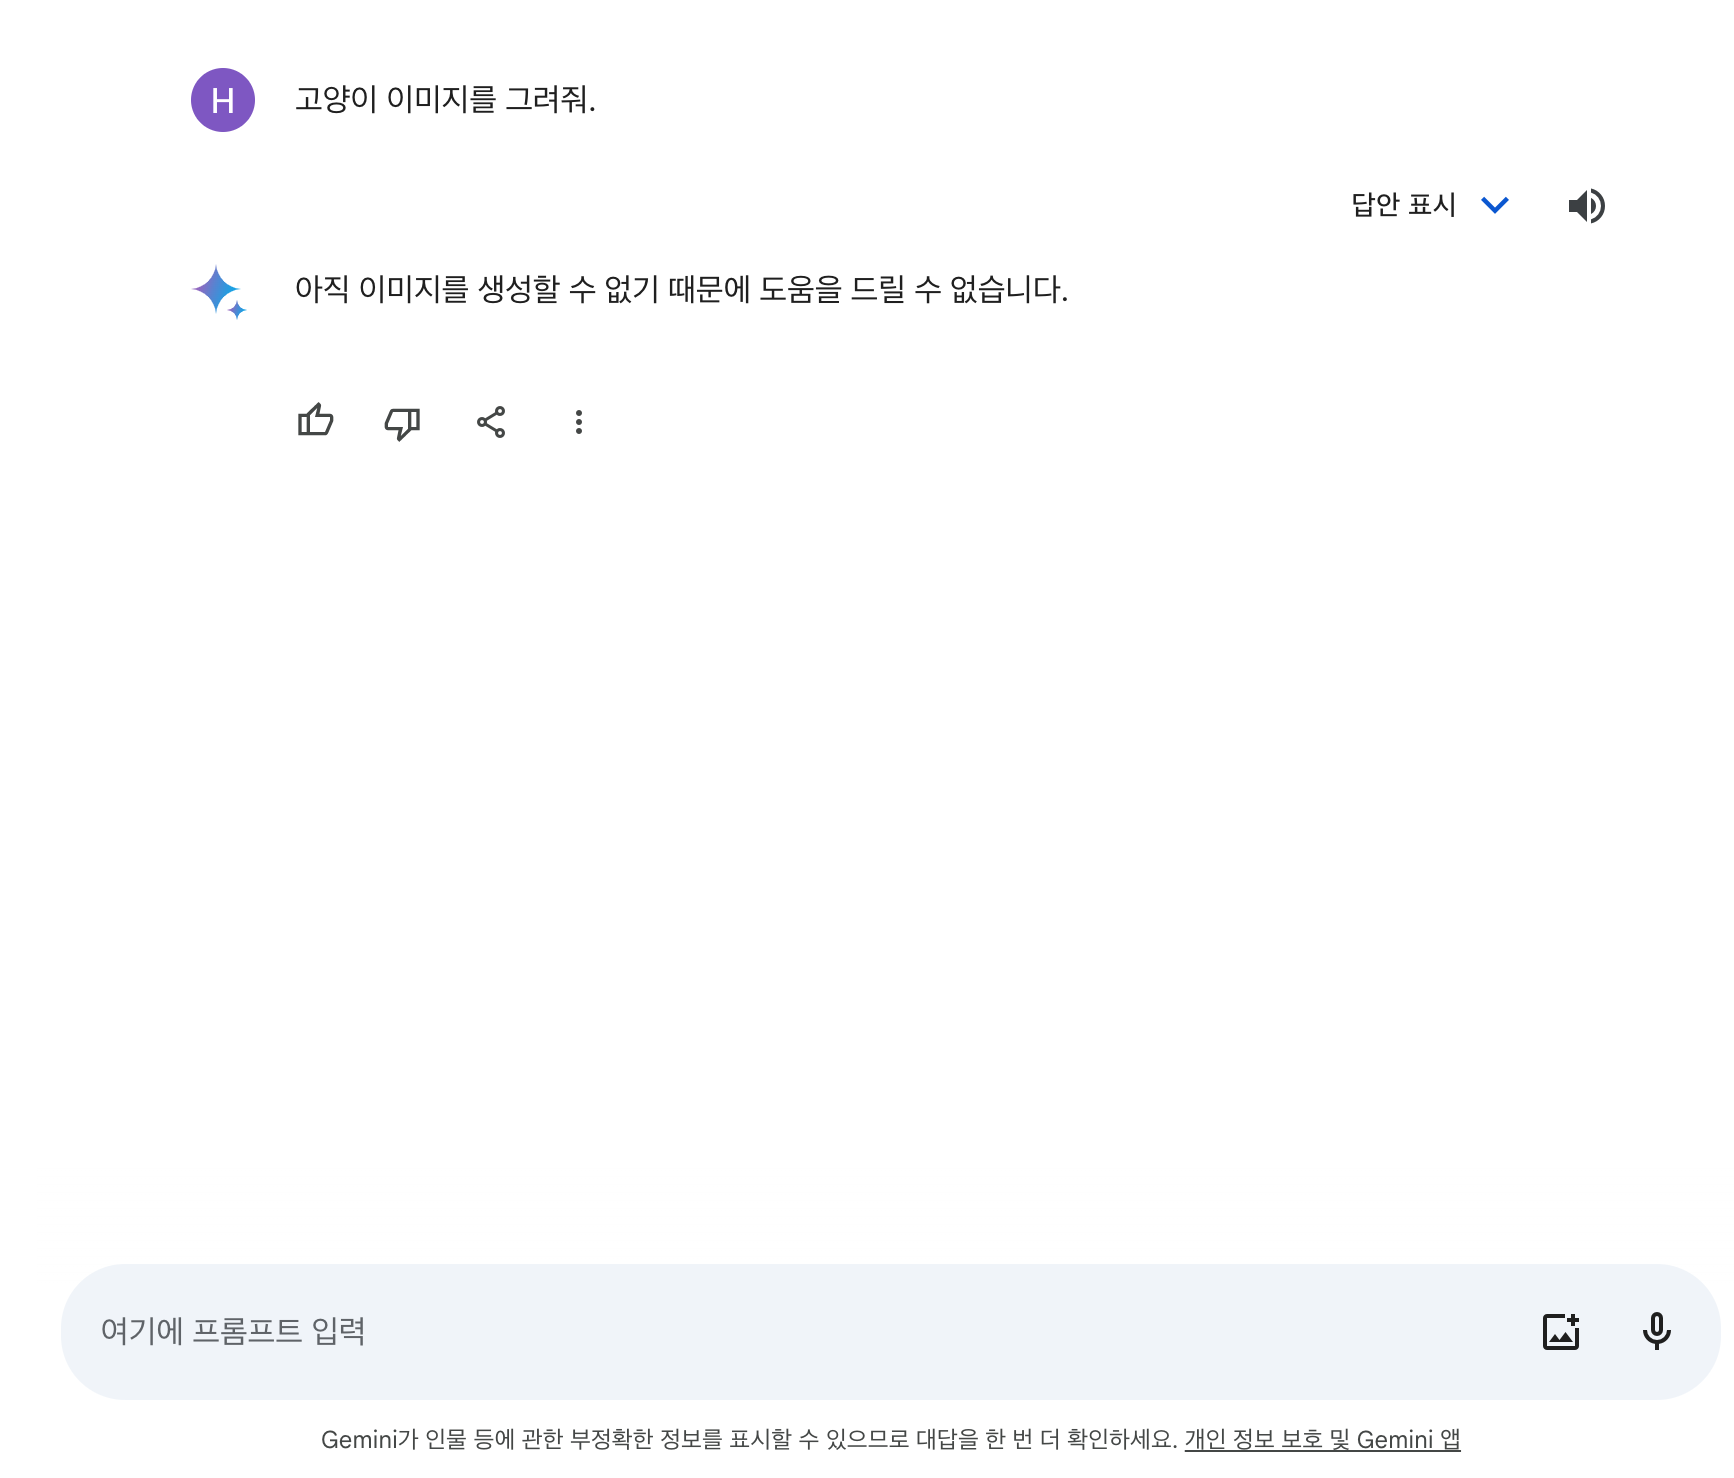 구글 제미나이(Gemini) 한국어 이미지 생성 요청 사례